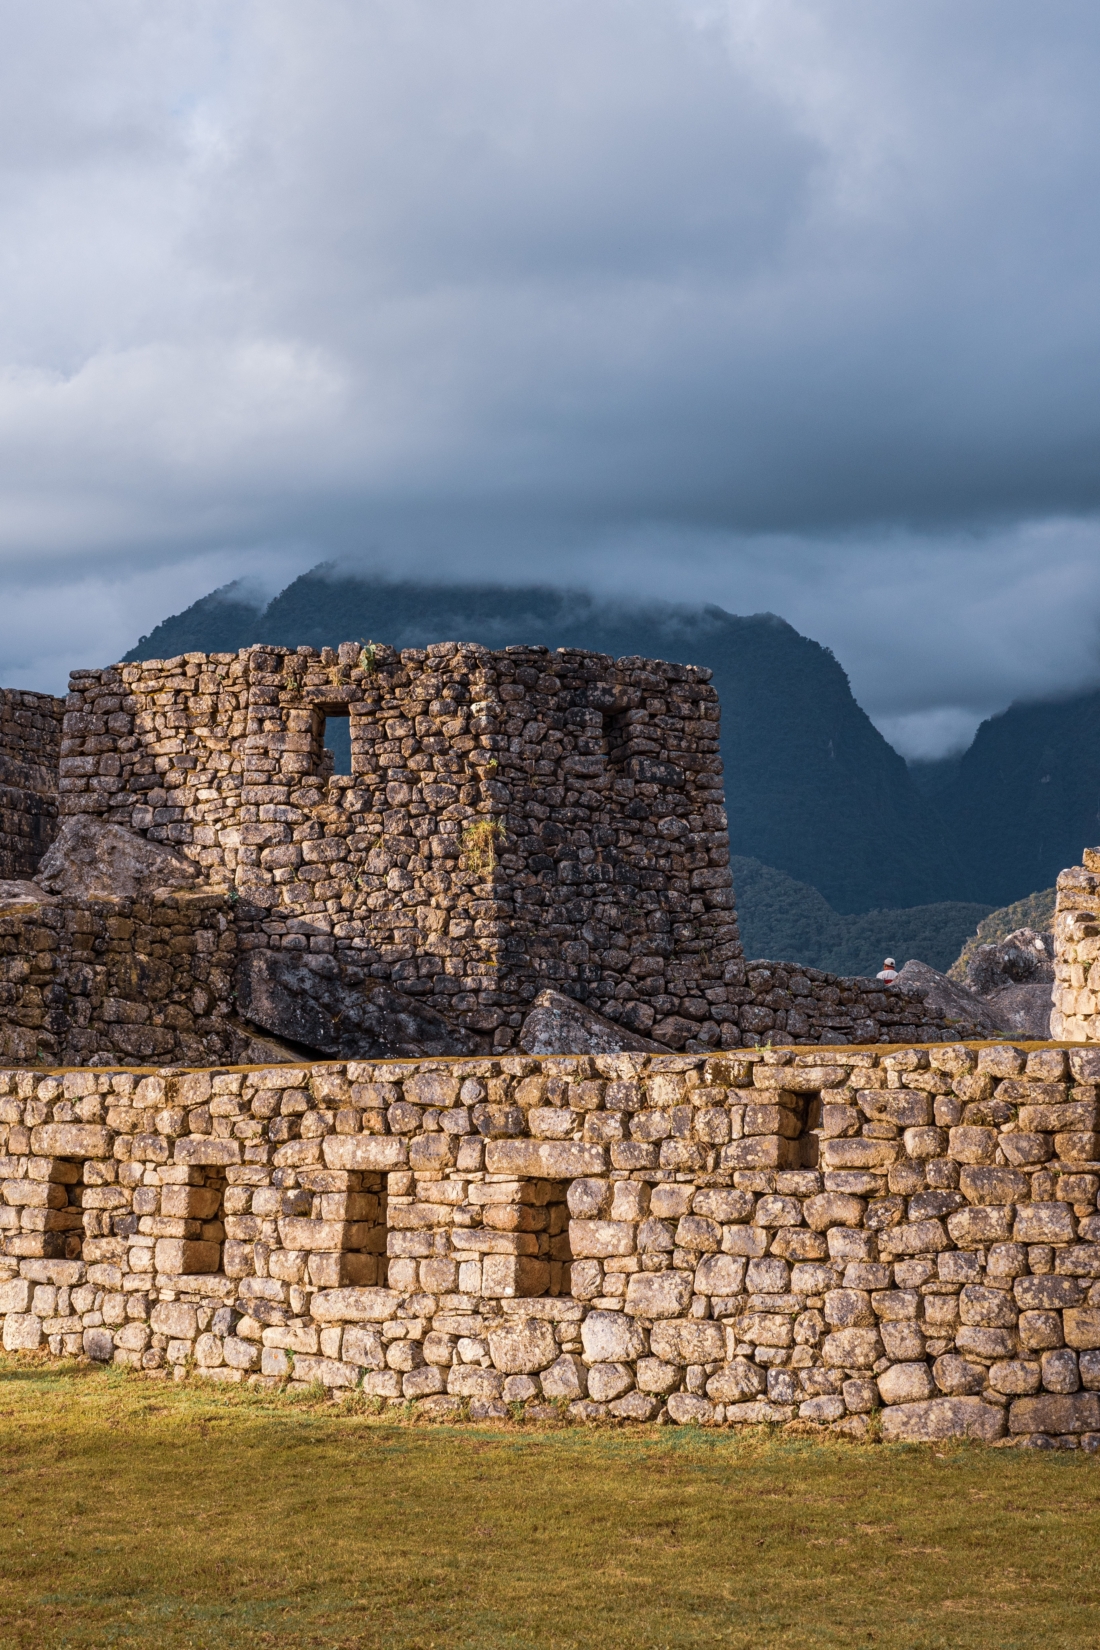 Incan-Machu-Picchu-Structure